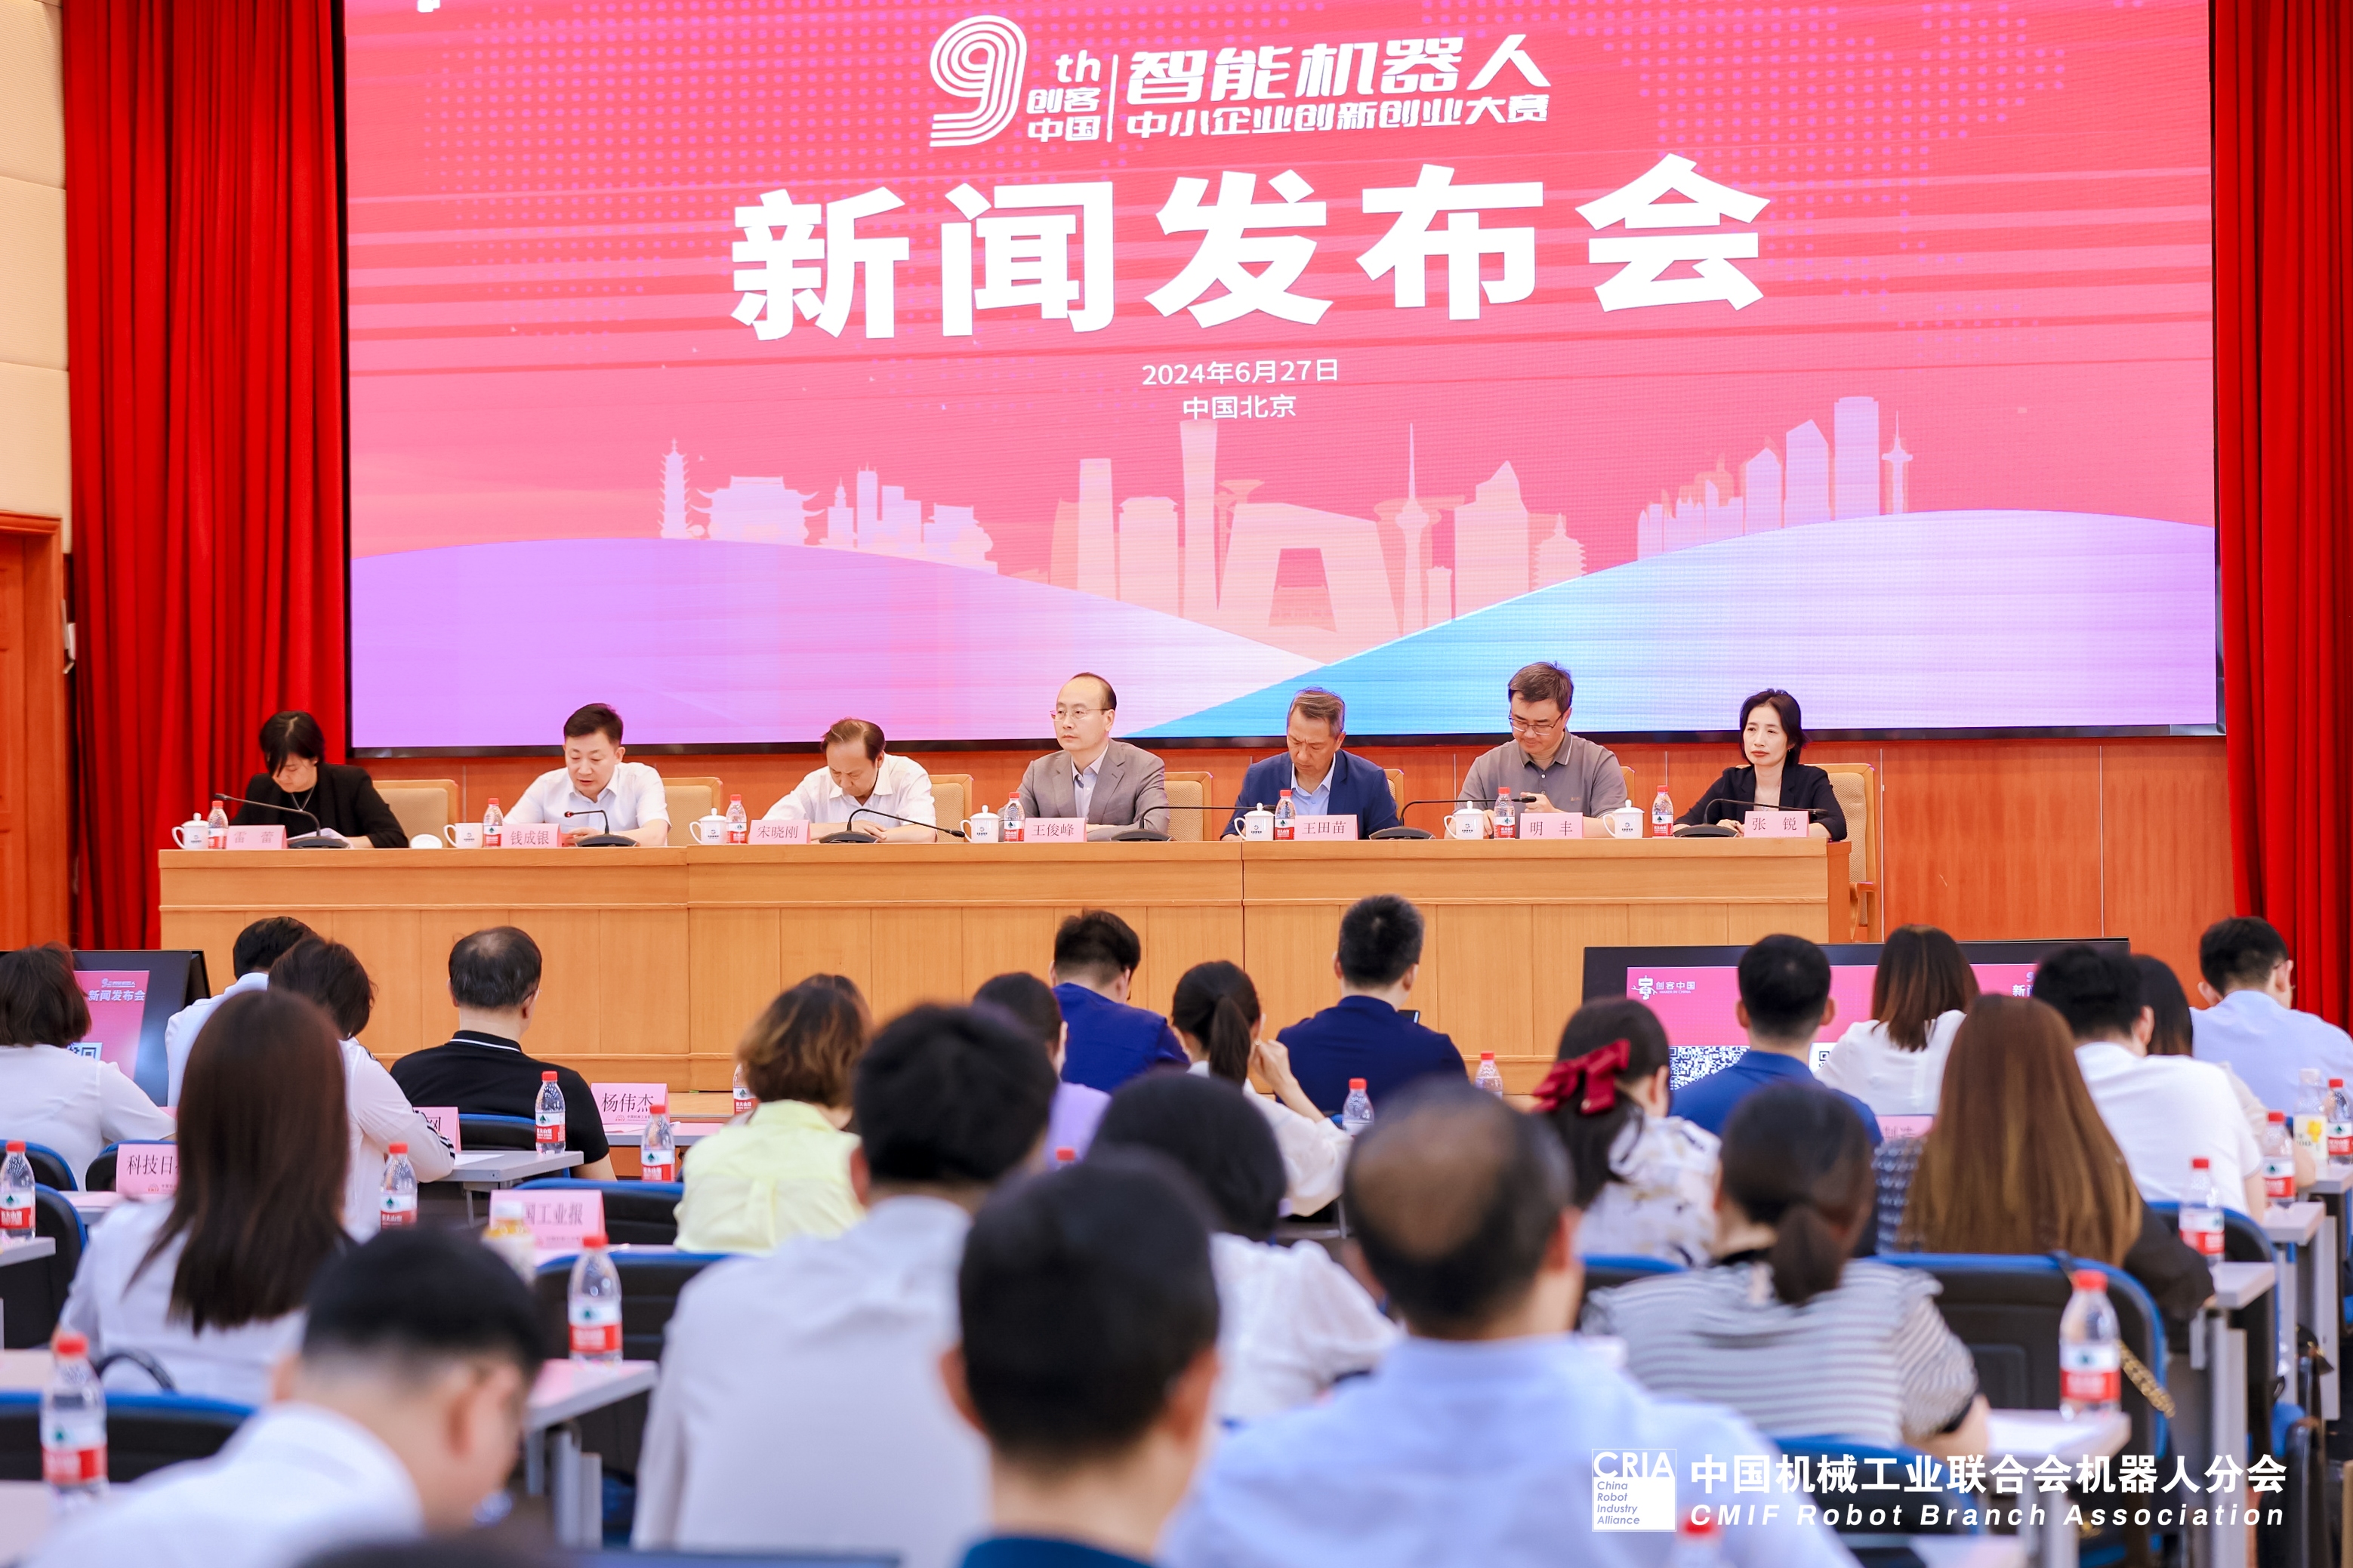 第九届“创客中国”智能机器人中小企业创新创业大赛 新闻发布会在京召开